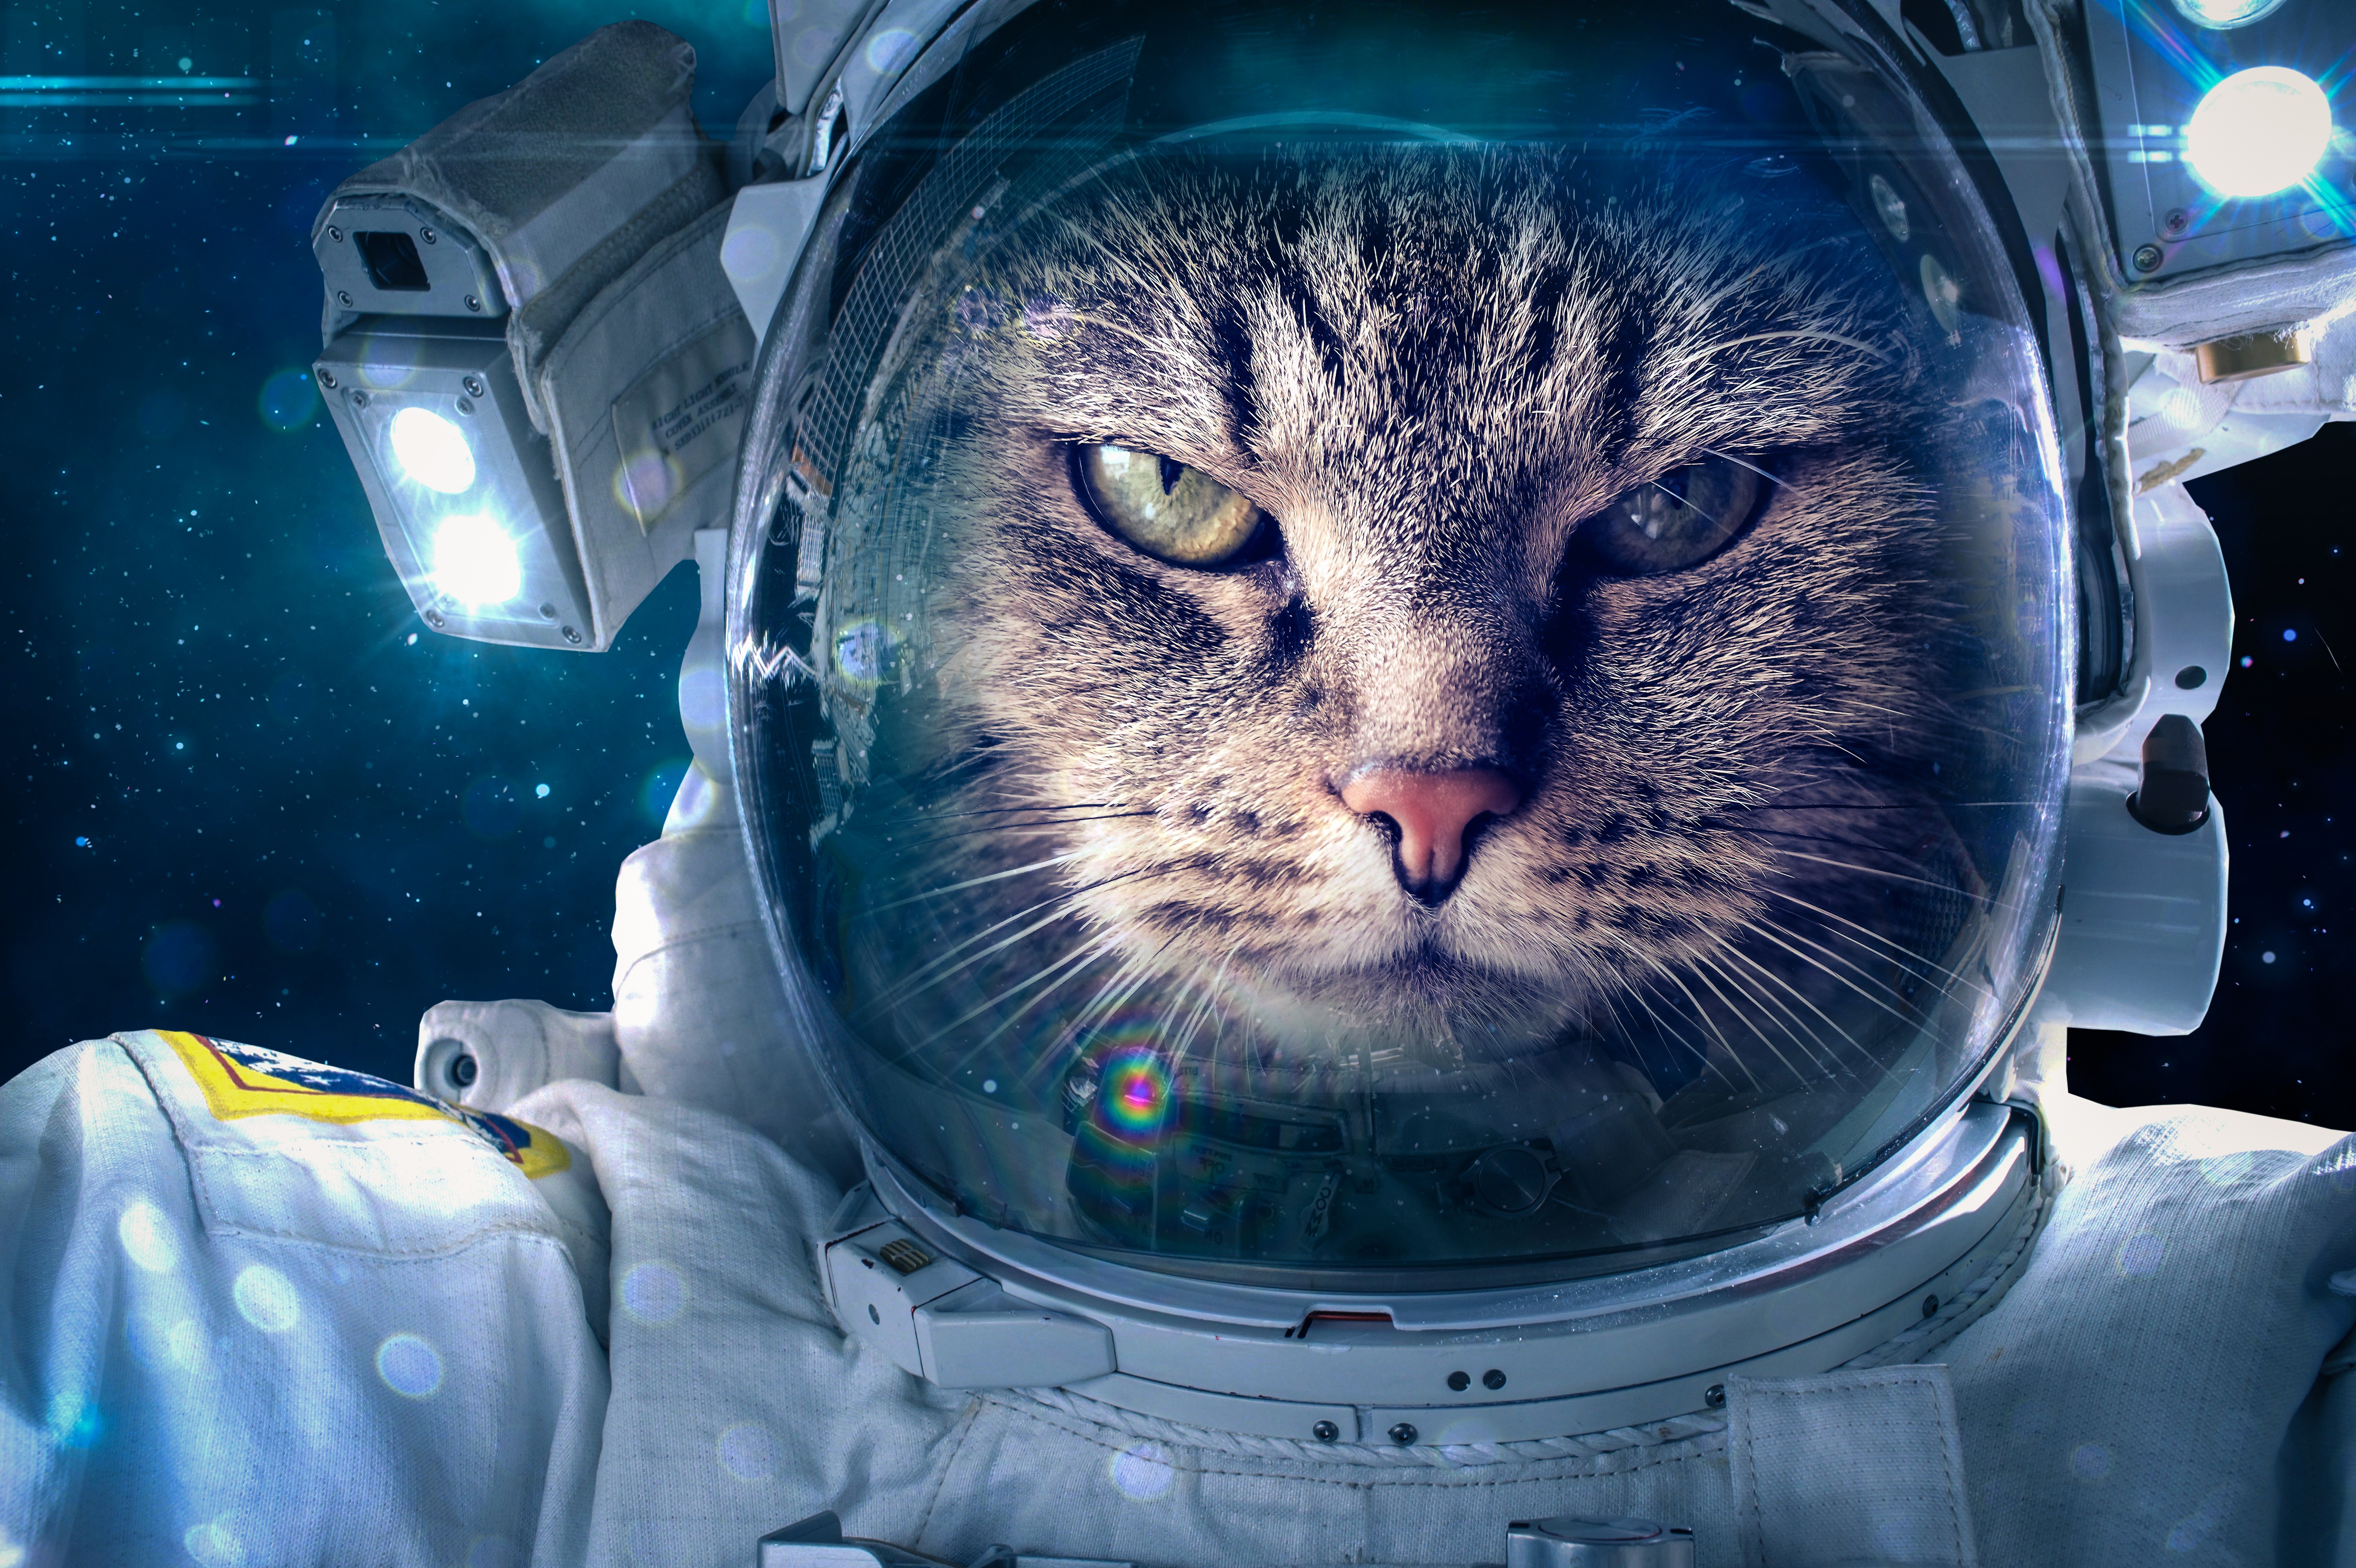 Descarga gratuita de fondo de pantalla para móvil de Gatos, Gato, Humor, Astronauta.